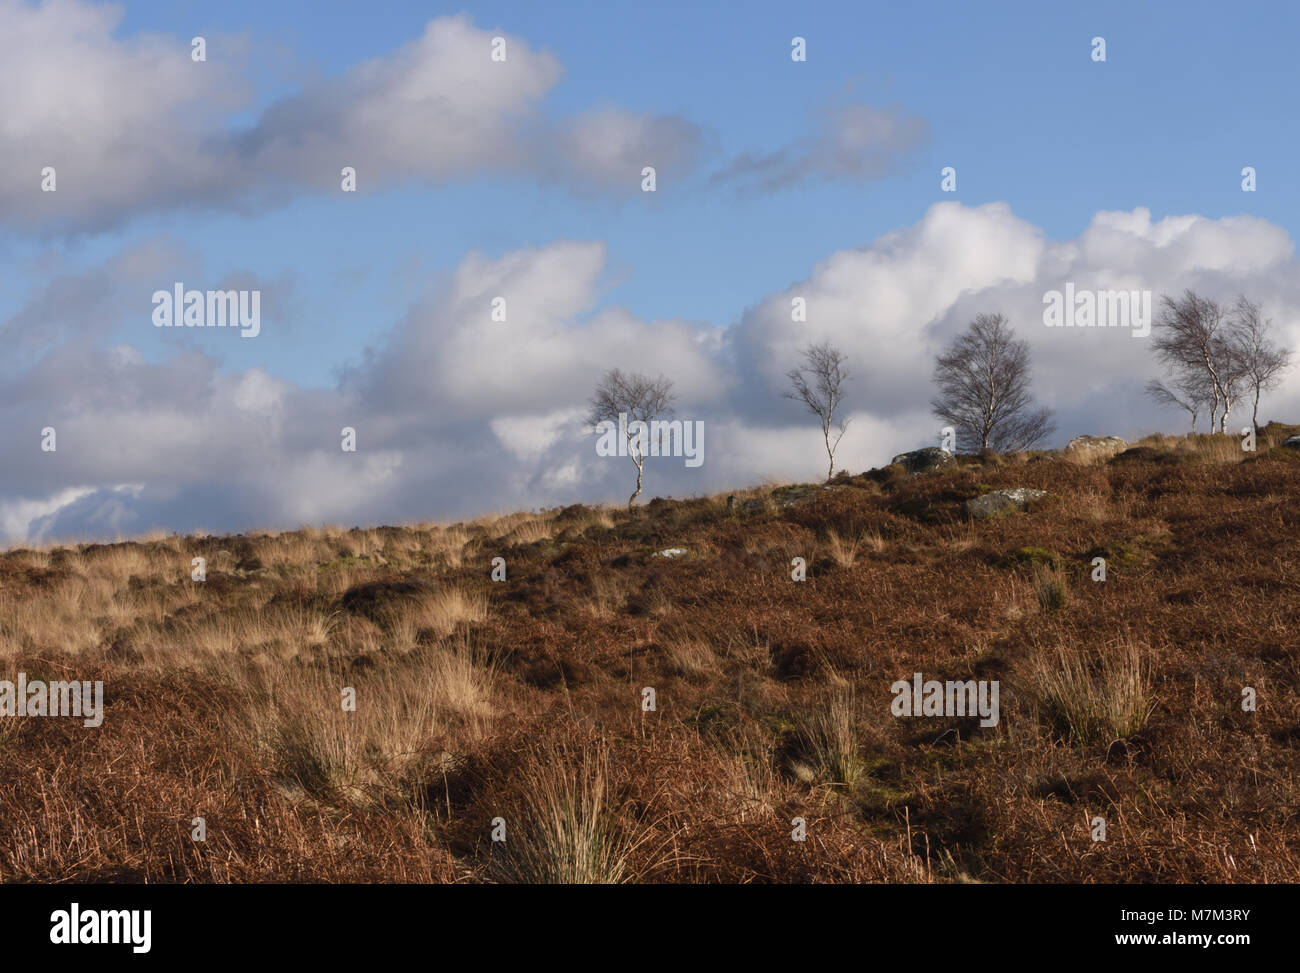 Hiver sans feuilles de bouleau verruqueux (Betula pendula) croissant parmi les morts de la fougère, la bruyère et les herbes sur Froggatt Edge. Froggatt, Derbyshire, Royaume-Uni. Banque D'Images